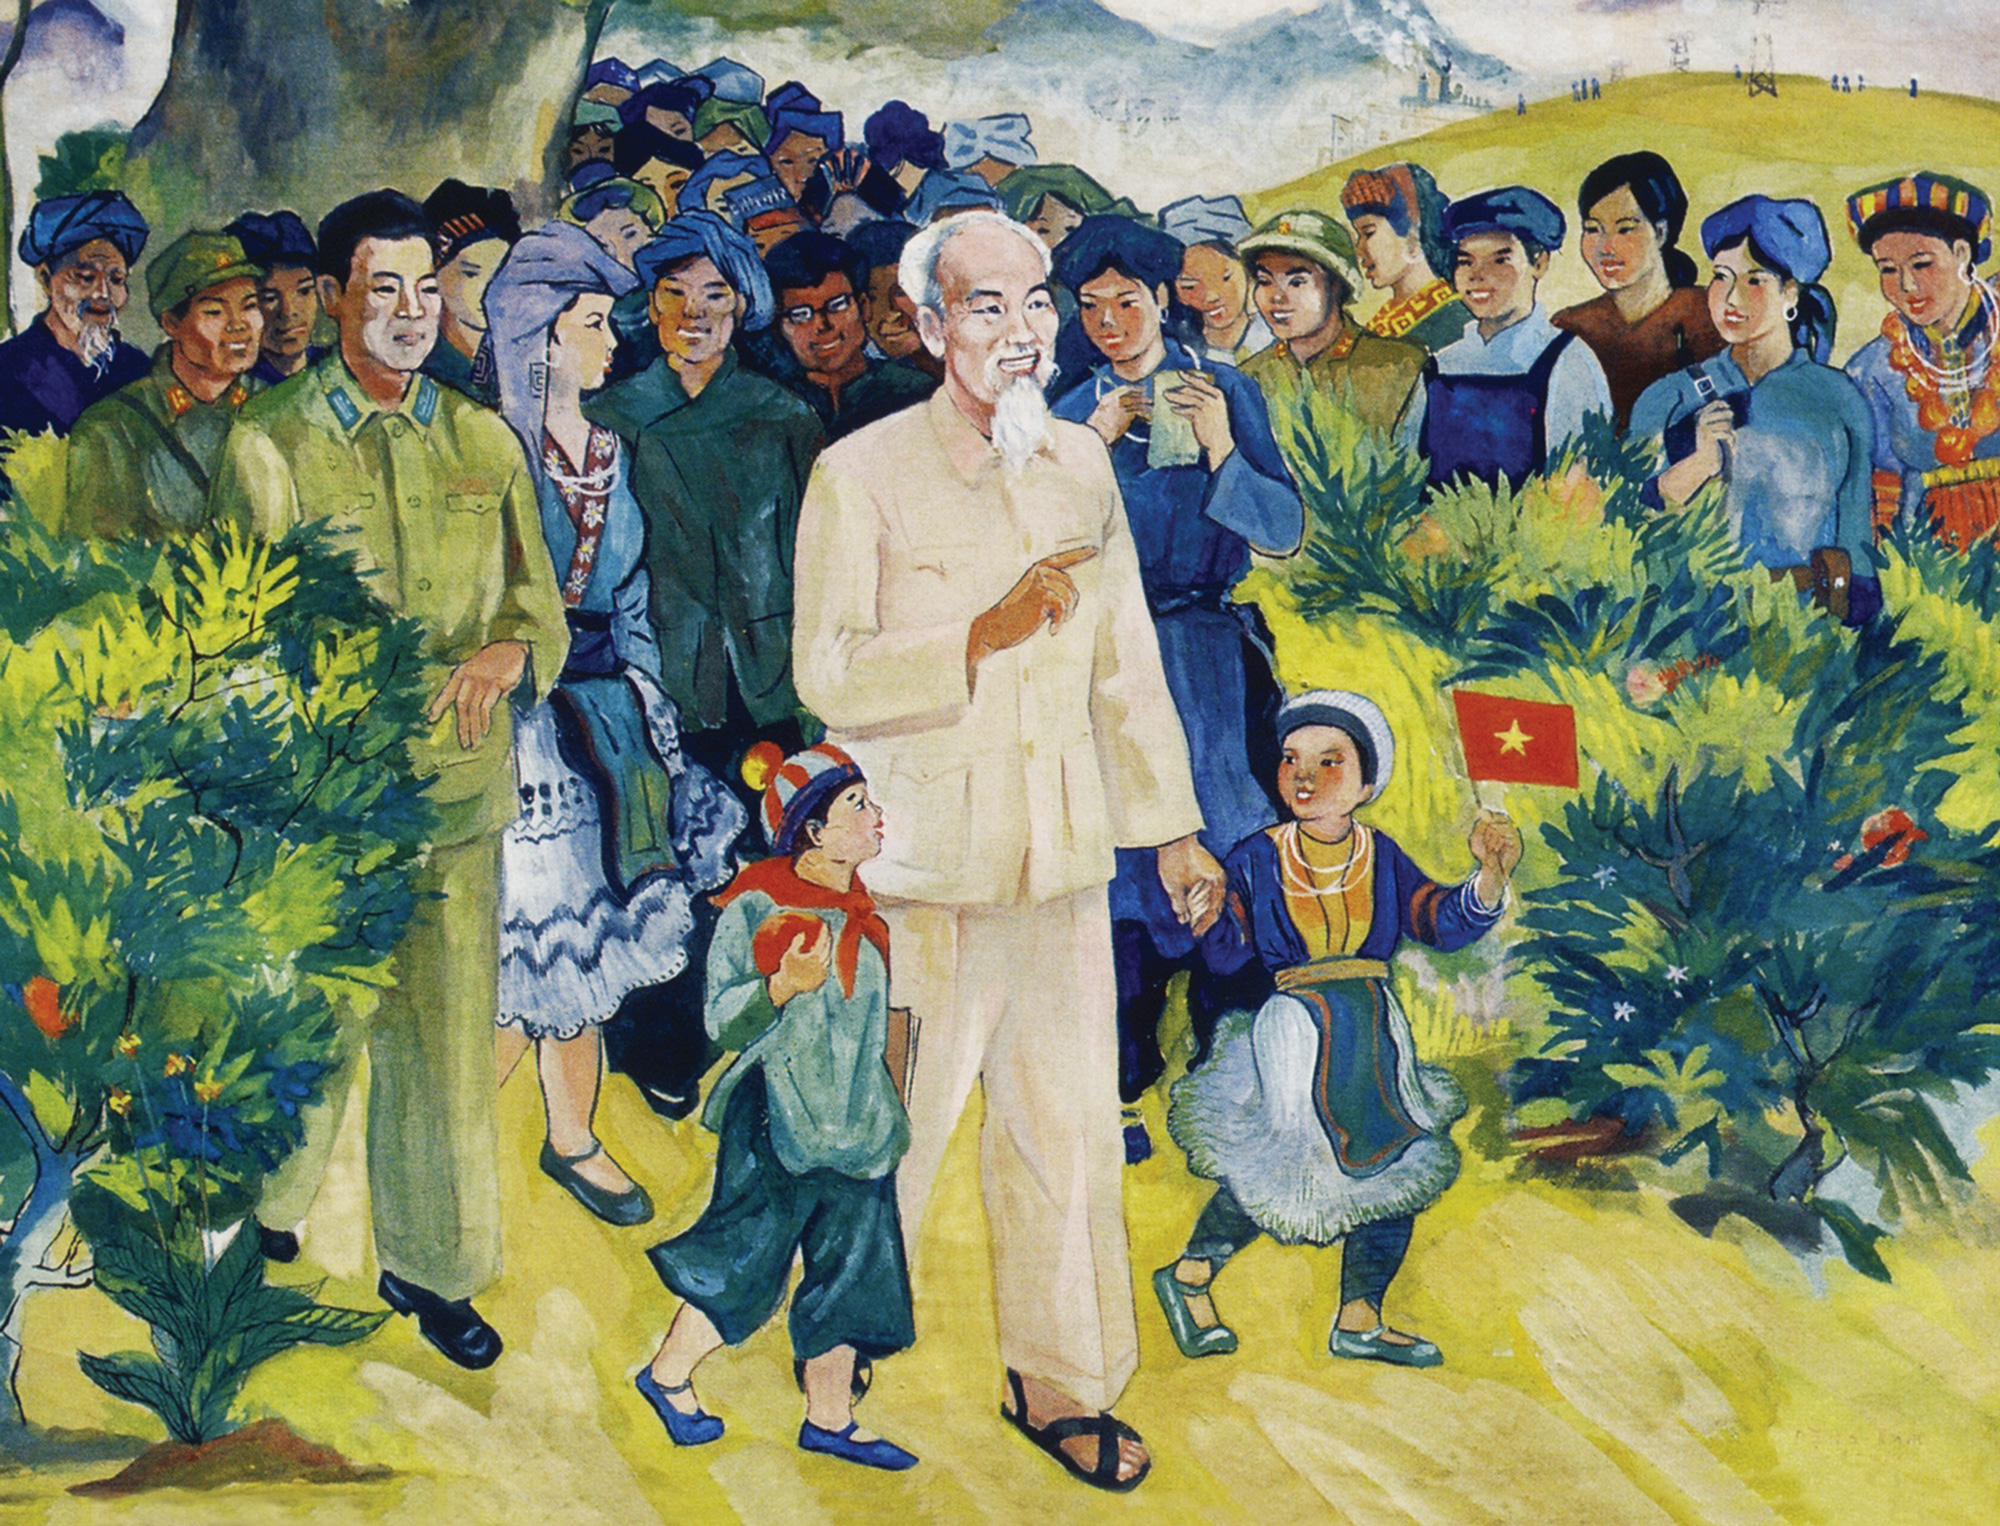 Tư tưởng Hồ Chí Minh đã trở thành trường phái tư tưởng quan trọng của đất nước Việt Nam. Với những tranh vẽ đề tài này, bạn sẽ thấy được những giá trị văn hóa và tư tưởng mà Bác Hồ đã để lại cho đất nước. Hãy đến và tìm hiểu rõ hơn về tư tưởng và sự nghiệp lớn lao của người cha đất Việt.